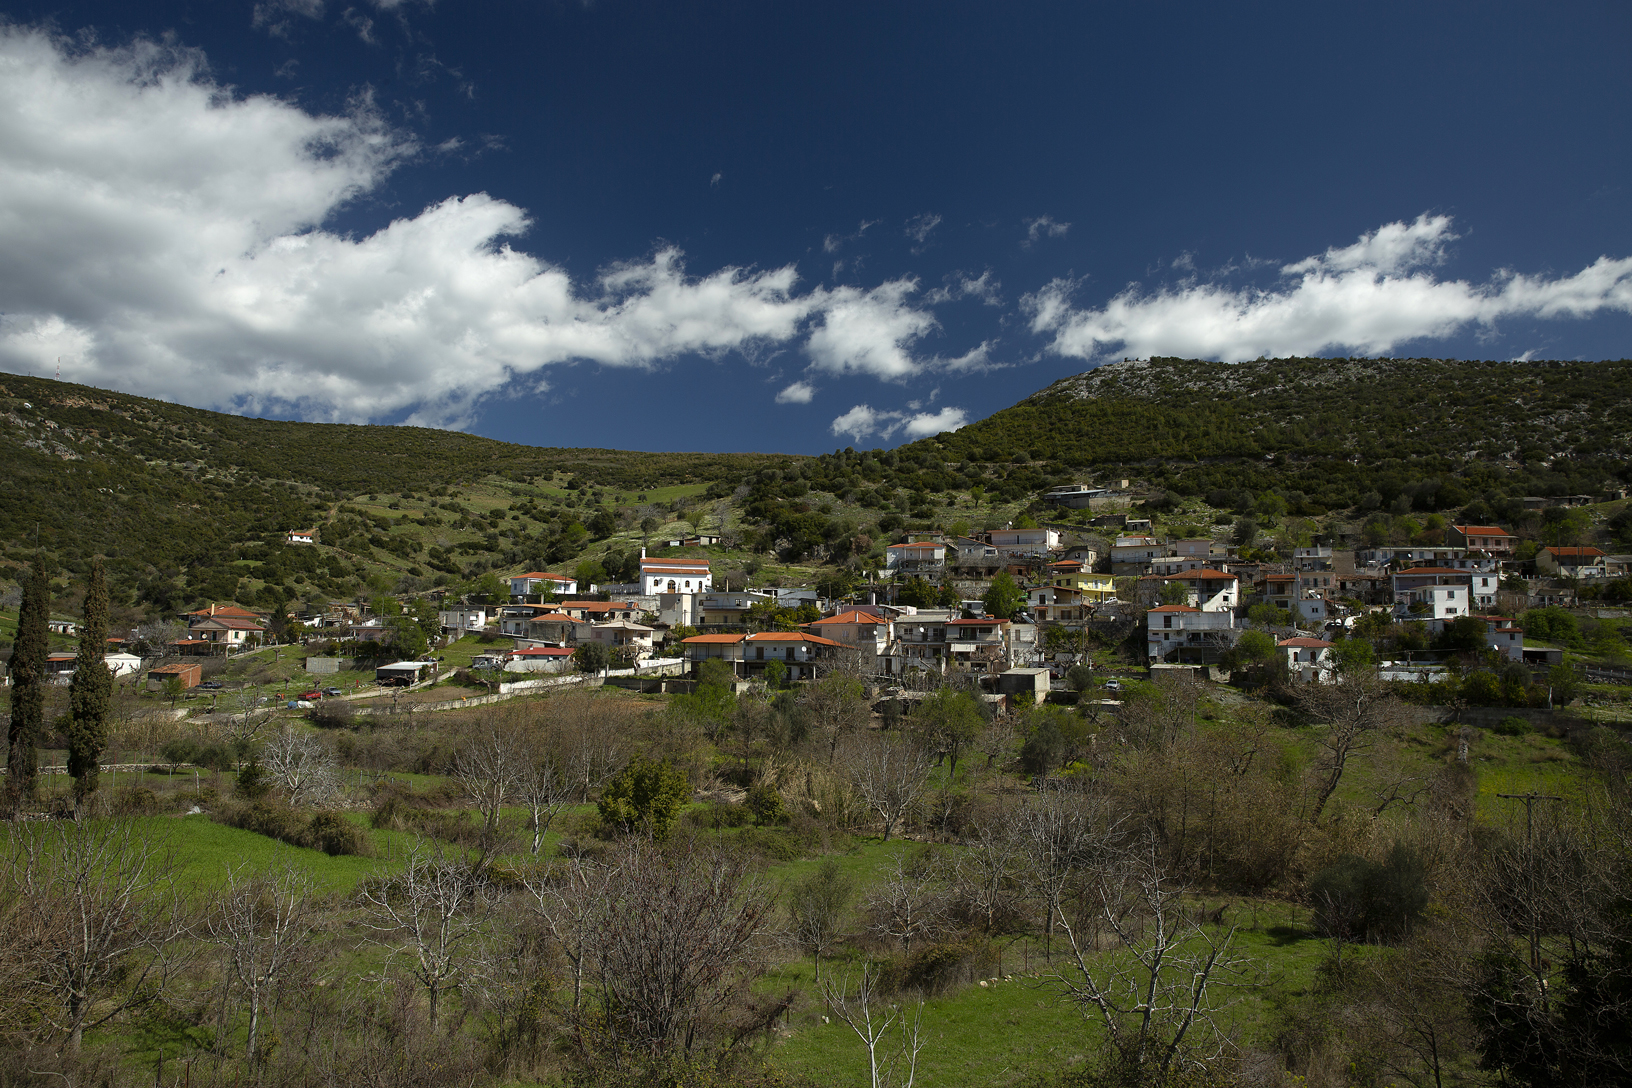 Χωριό Παραμερίτες. Φωτογραφία: ©Βασίλης Συκάς, για τον Δήμο Κύμης-Αλιβερίου